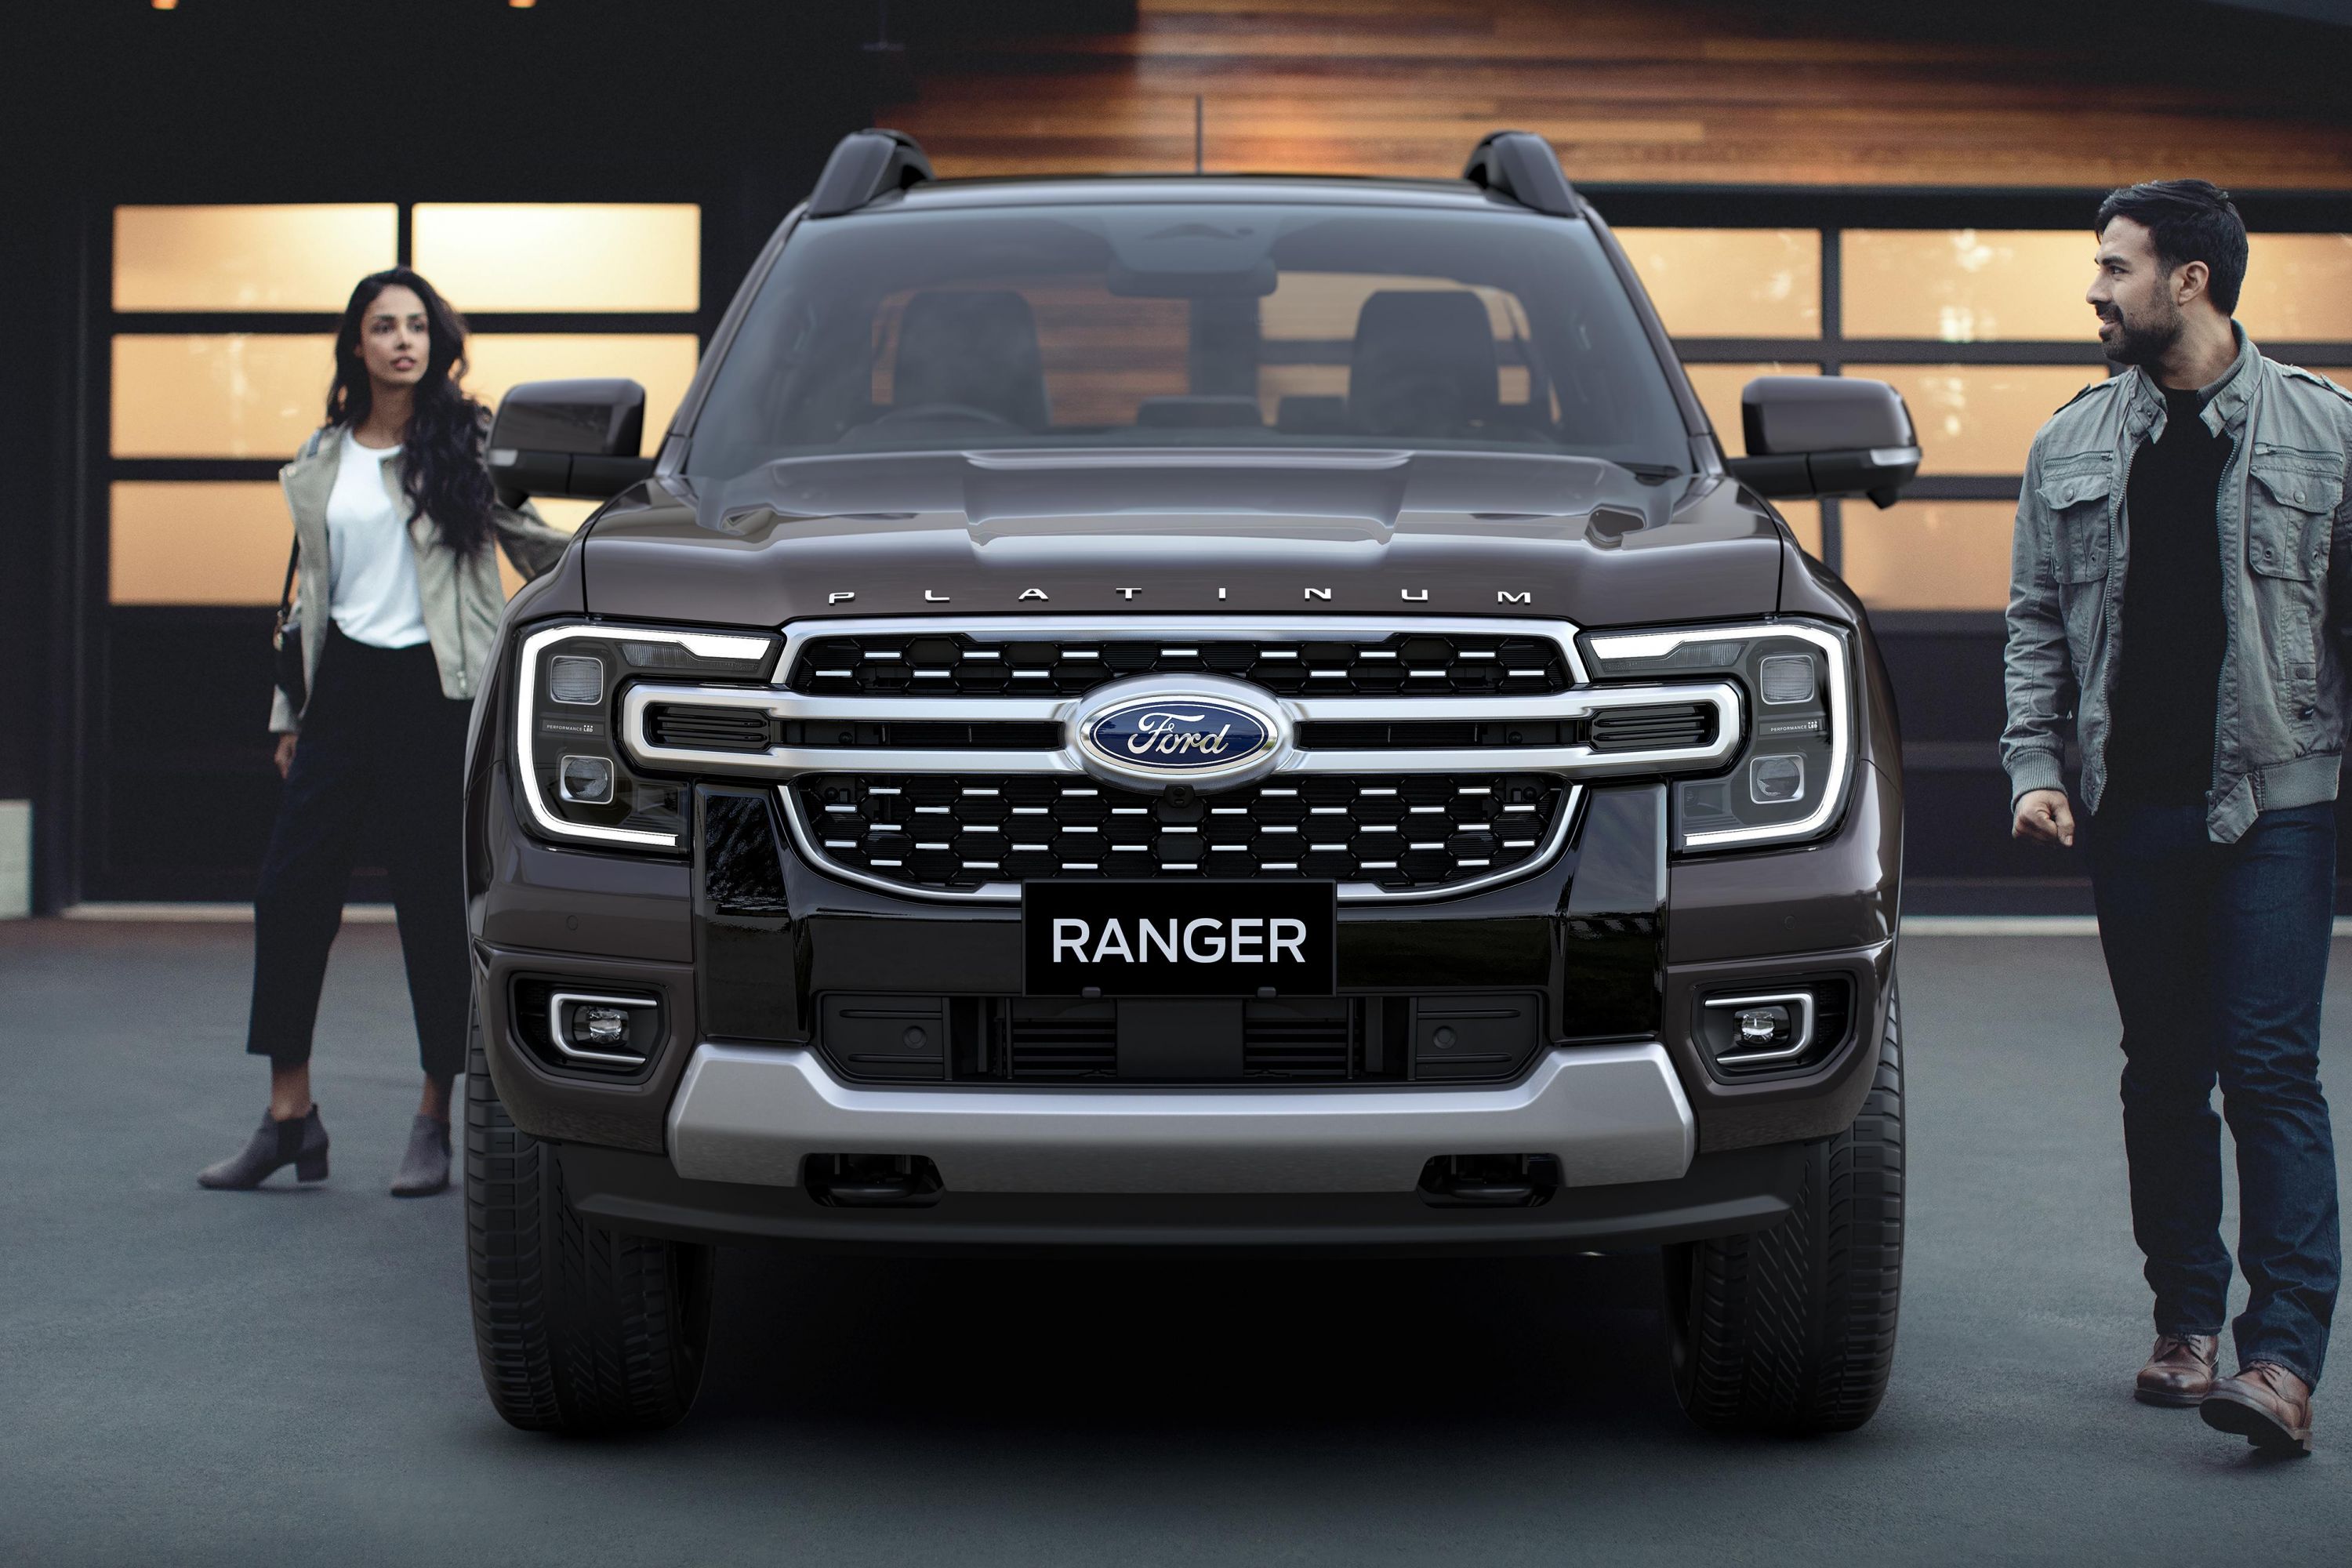 Ford Ranger Platinum Has Turbo V6 Engine, Unique Design Touches